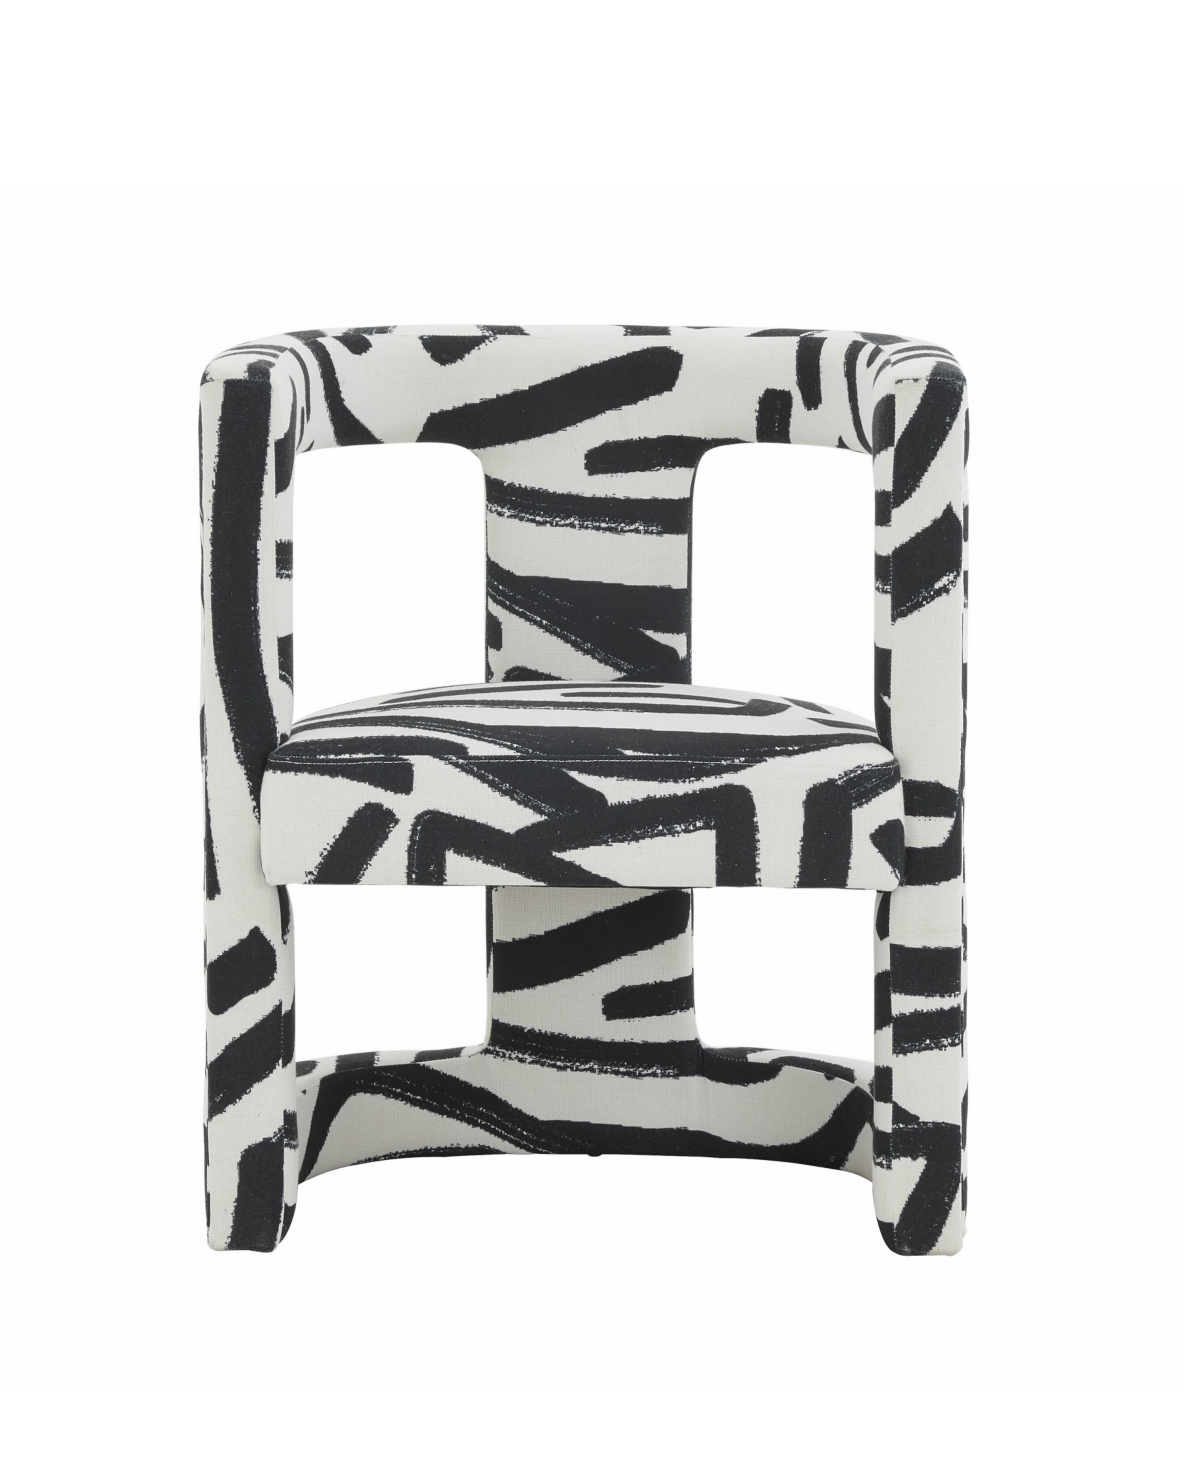 Tov Furniture Ada Velvet Chair In Black Brushstroke Pattern In Black And White